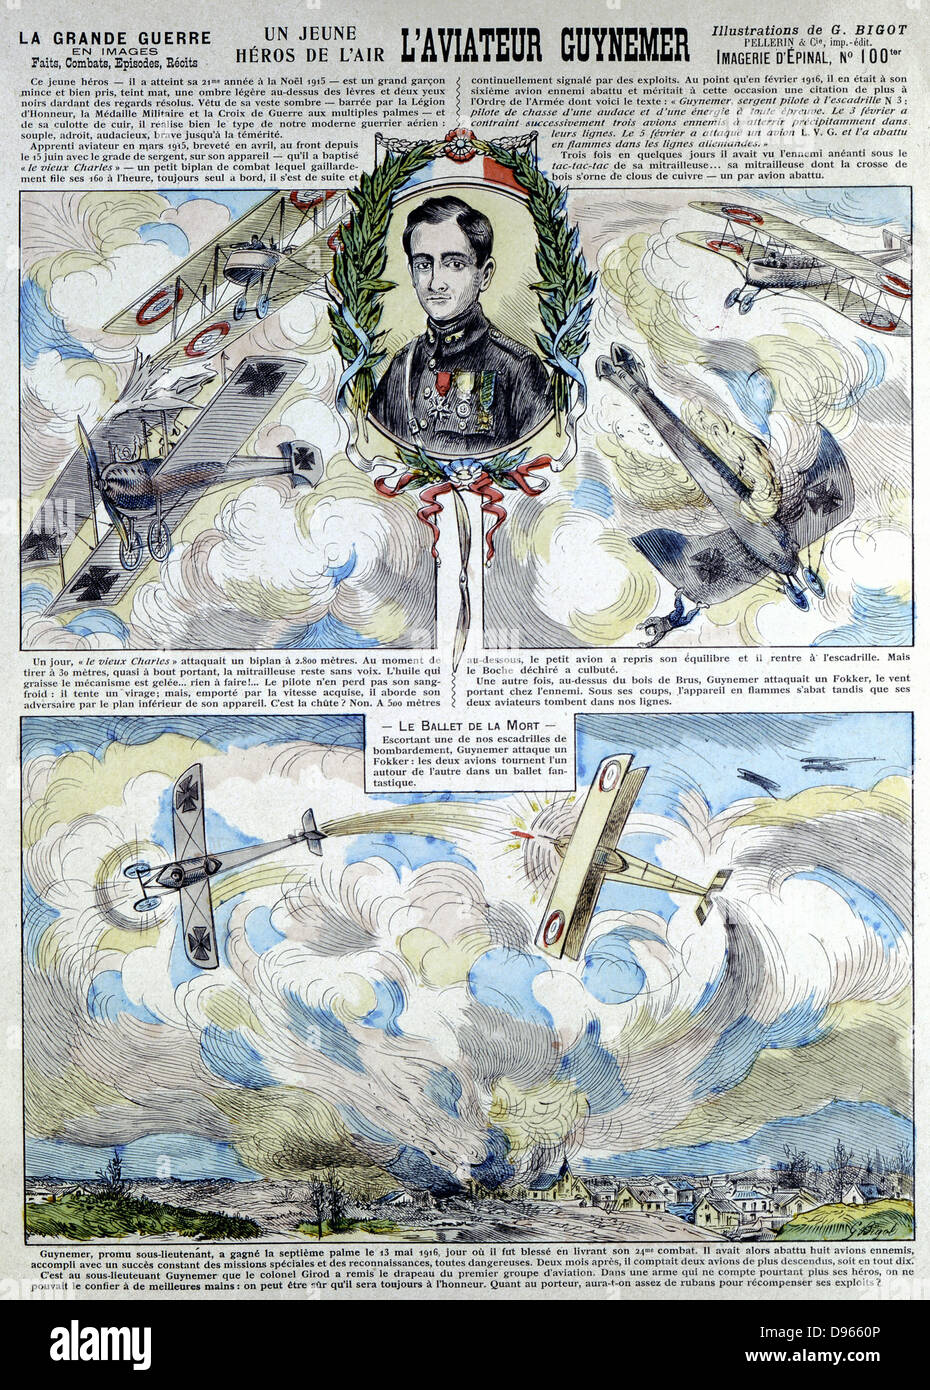 Georges-Marie Guynemer (1895-1917) Französische air Fighter ace Abgeschossen 8 Mal. Im Kampf 1917 starb. Mit 53 Luft Siege gutgeschrieben. Broadsheet zeigen Hund kämpft mit Deutschen biplanar und Fokkers. Stockfoto